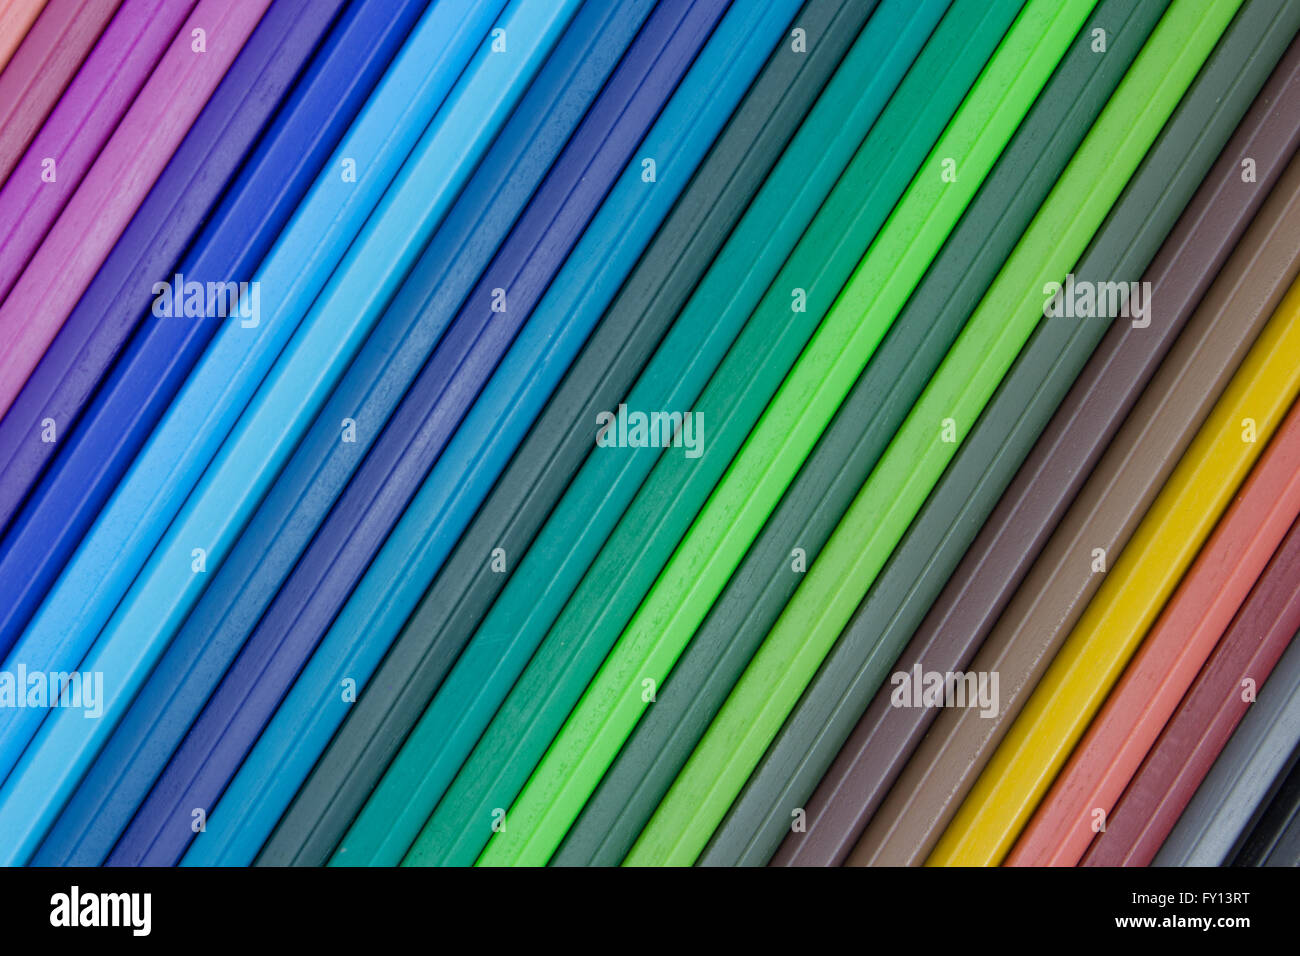 mehrfarbig gestreiften Hintergrund - verschiedene farbige Linien Stockfoto